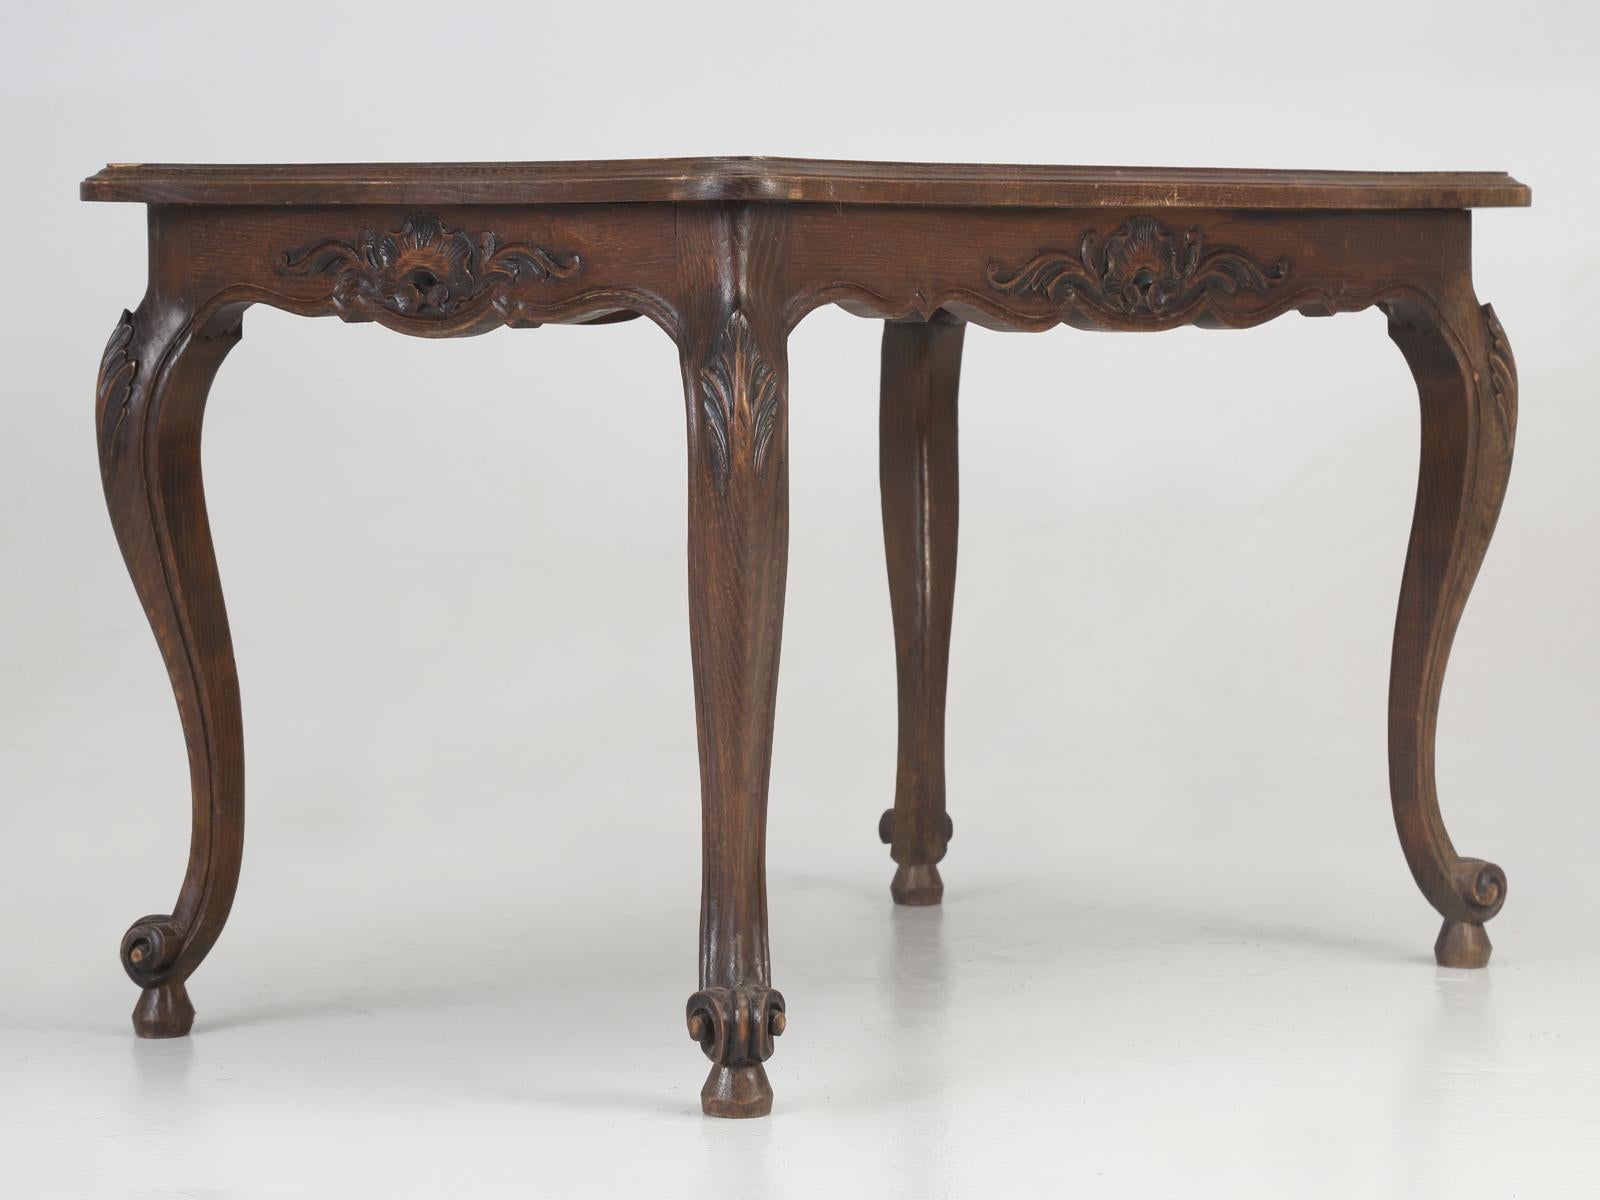 Table d'appoint ou table d'appoint vintage de style Louis XV dans son état d'origine non restauré. Notre département de restauration peut certainement restaurer la table, mais dès que je le fais sombre, sûrement quelqu'un voudra cette table